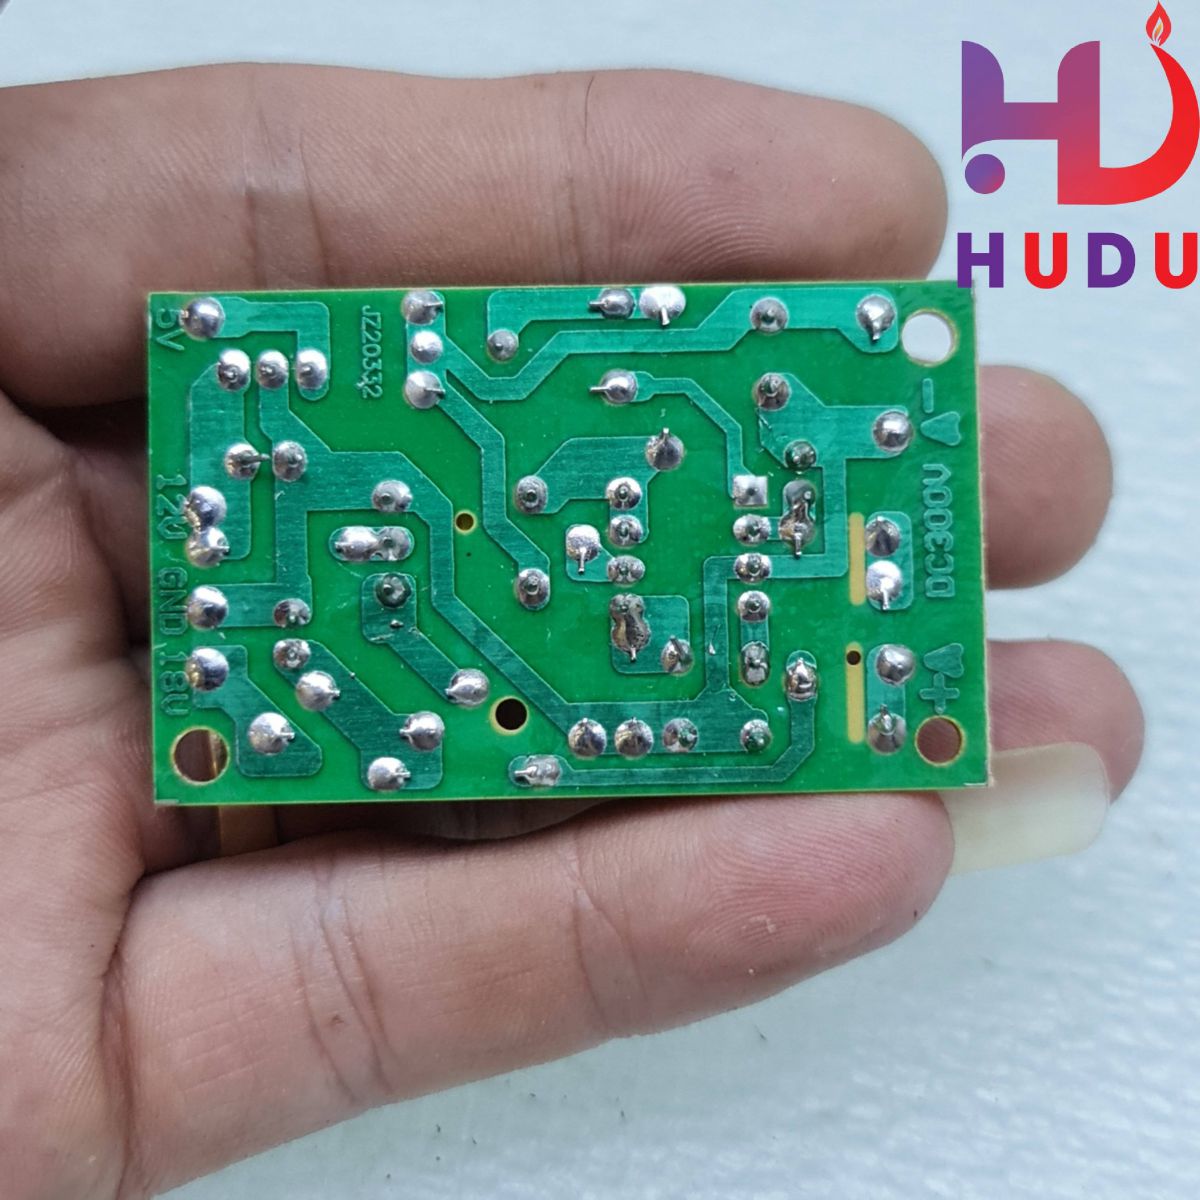 Linh kiện điện tử Hudu cung cấp độ nguồn bếp từ - hồng ngoại 3 đầu ra 5V-12V-18V